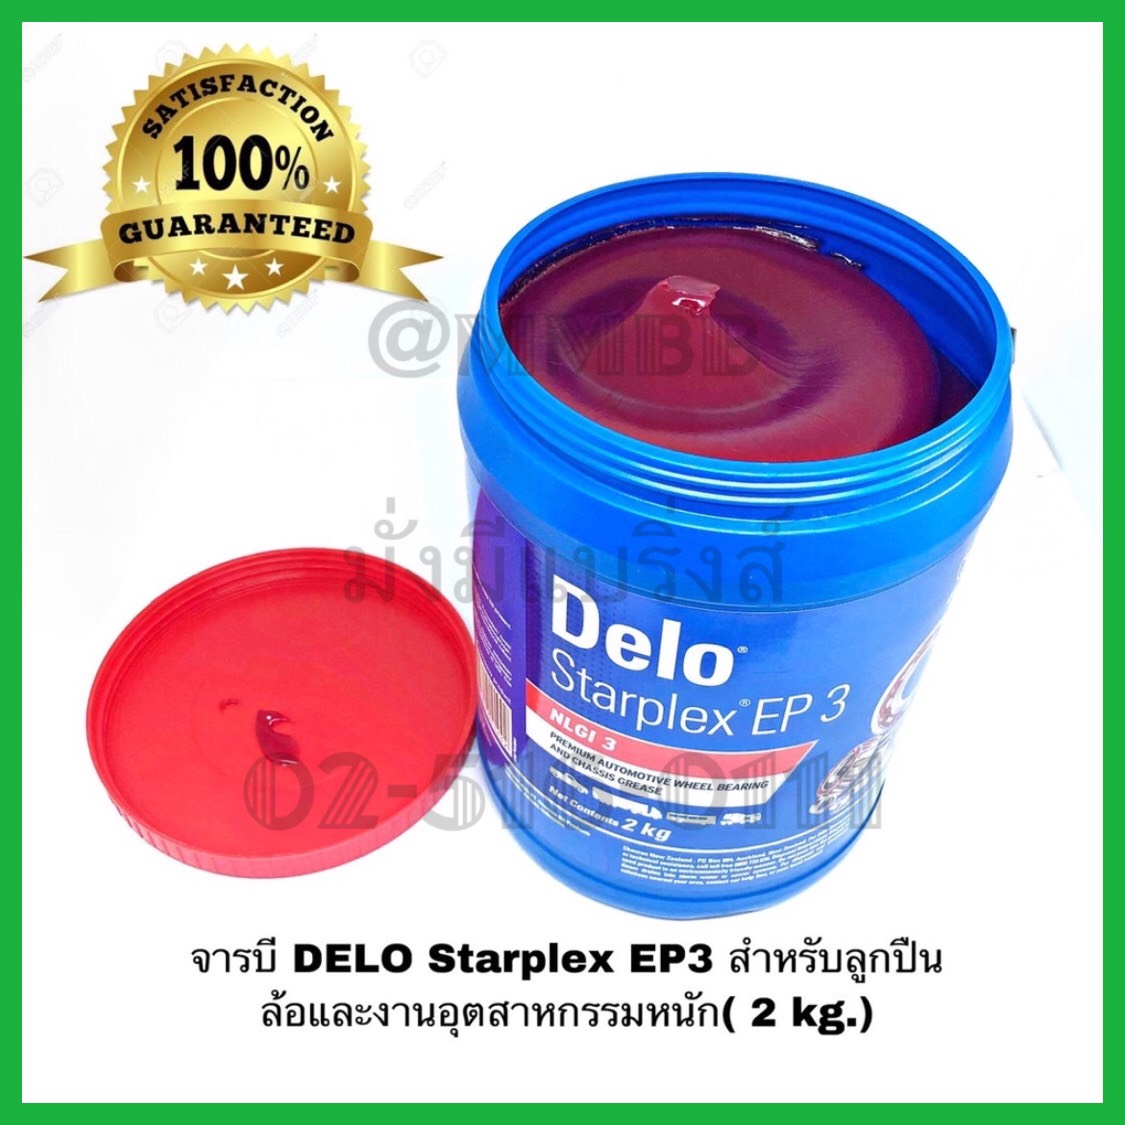 จารบี DELO Starplex EP3 จาระบี Delo สำหรับลูกปืนล้อและงานอุตสาหกรรมหนัก( 2 kg.) เนื้อสีแดง จาระบี Delo